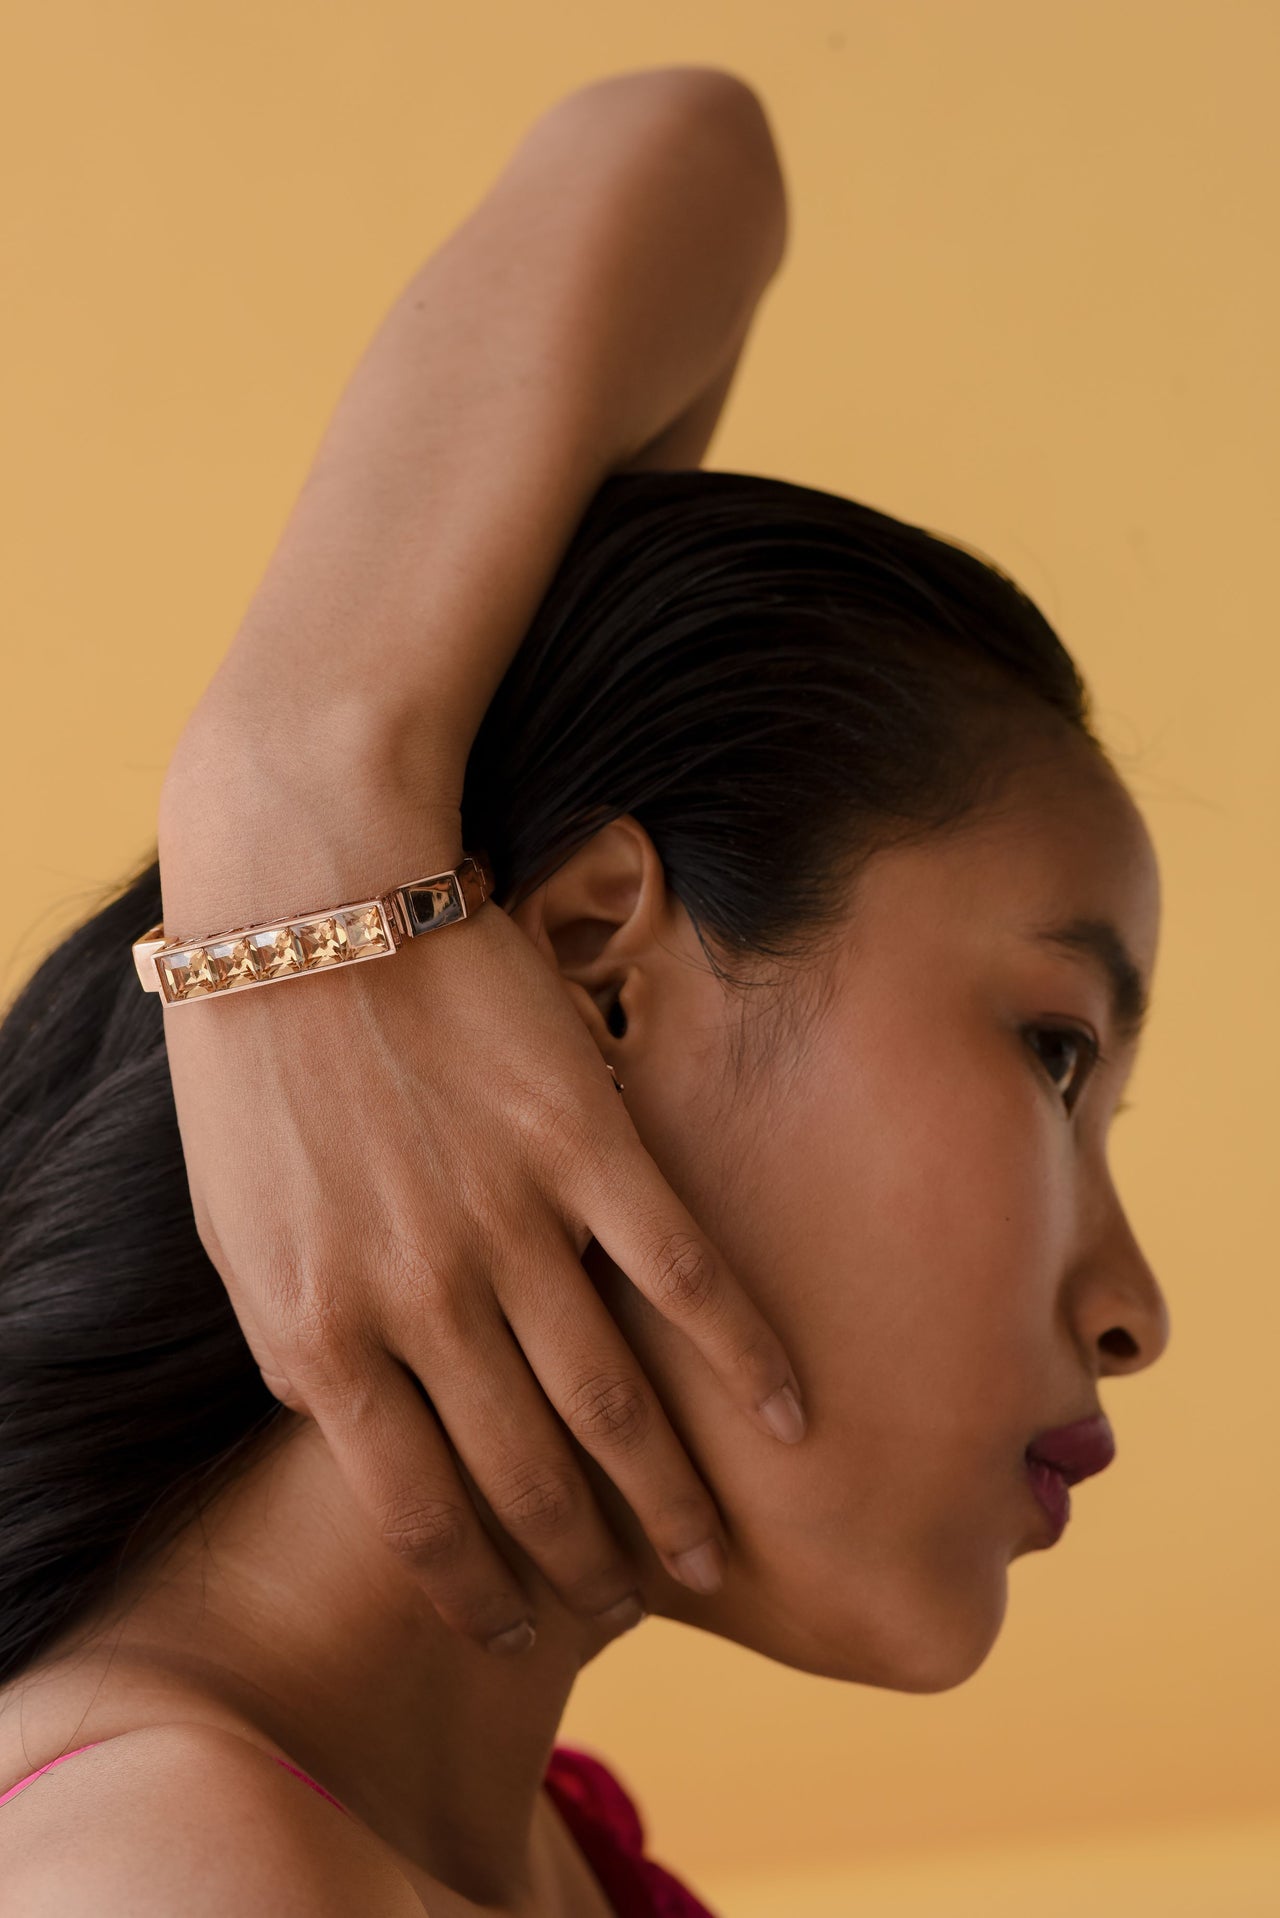 Flexible Swarovski crystal wrist jewelry